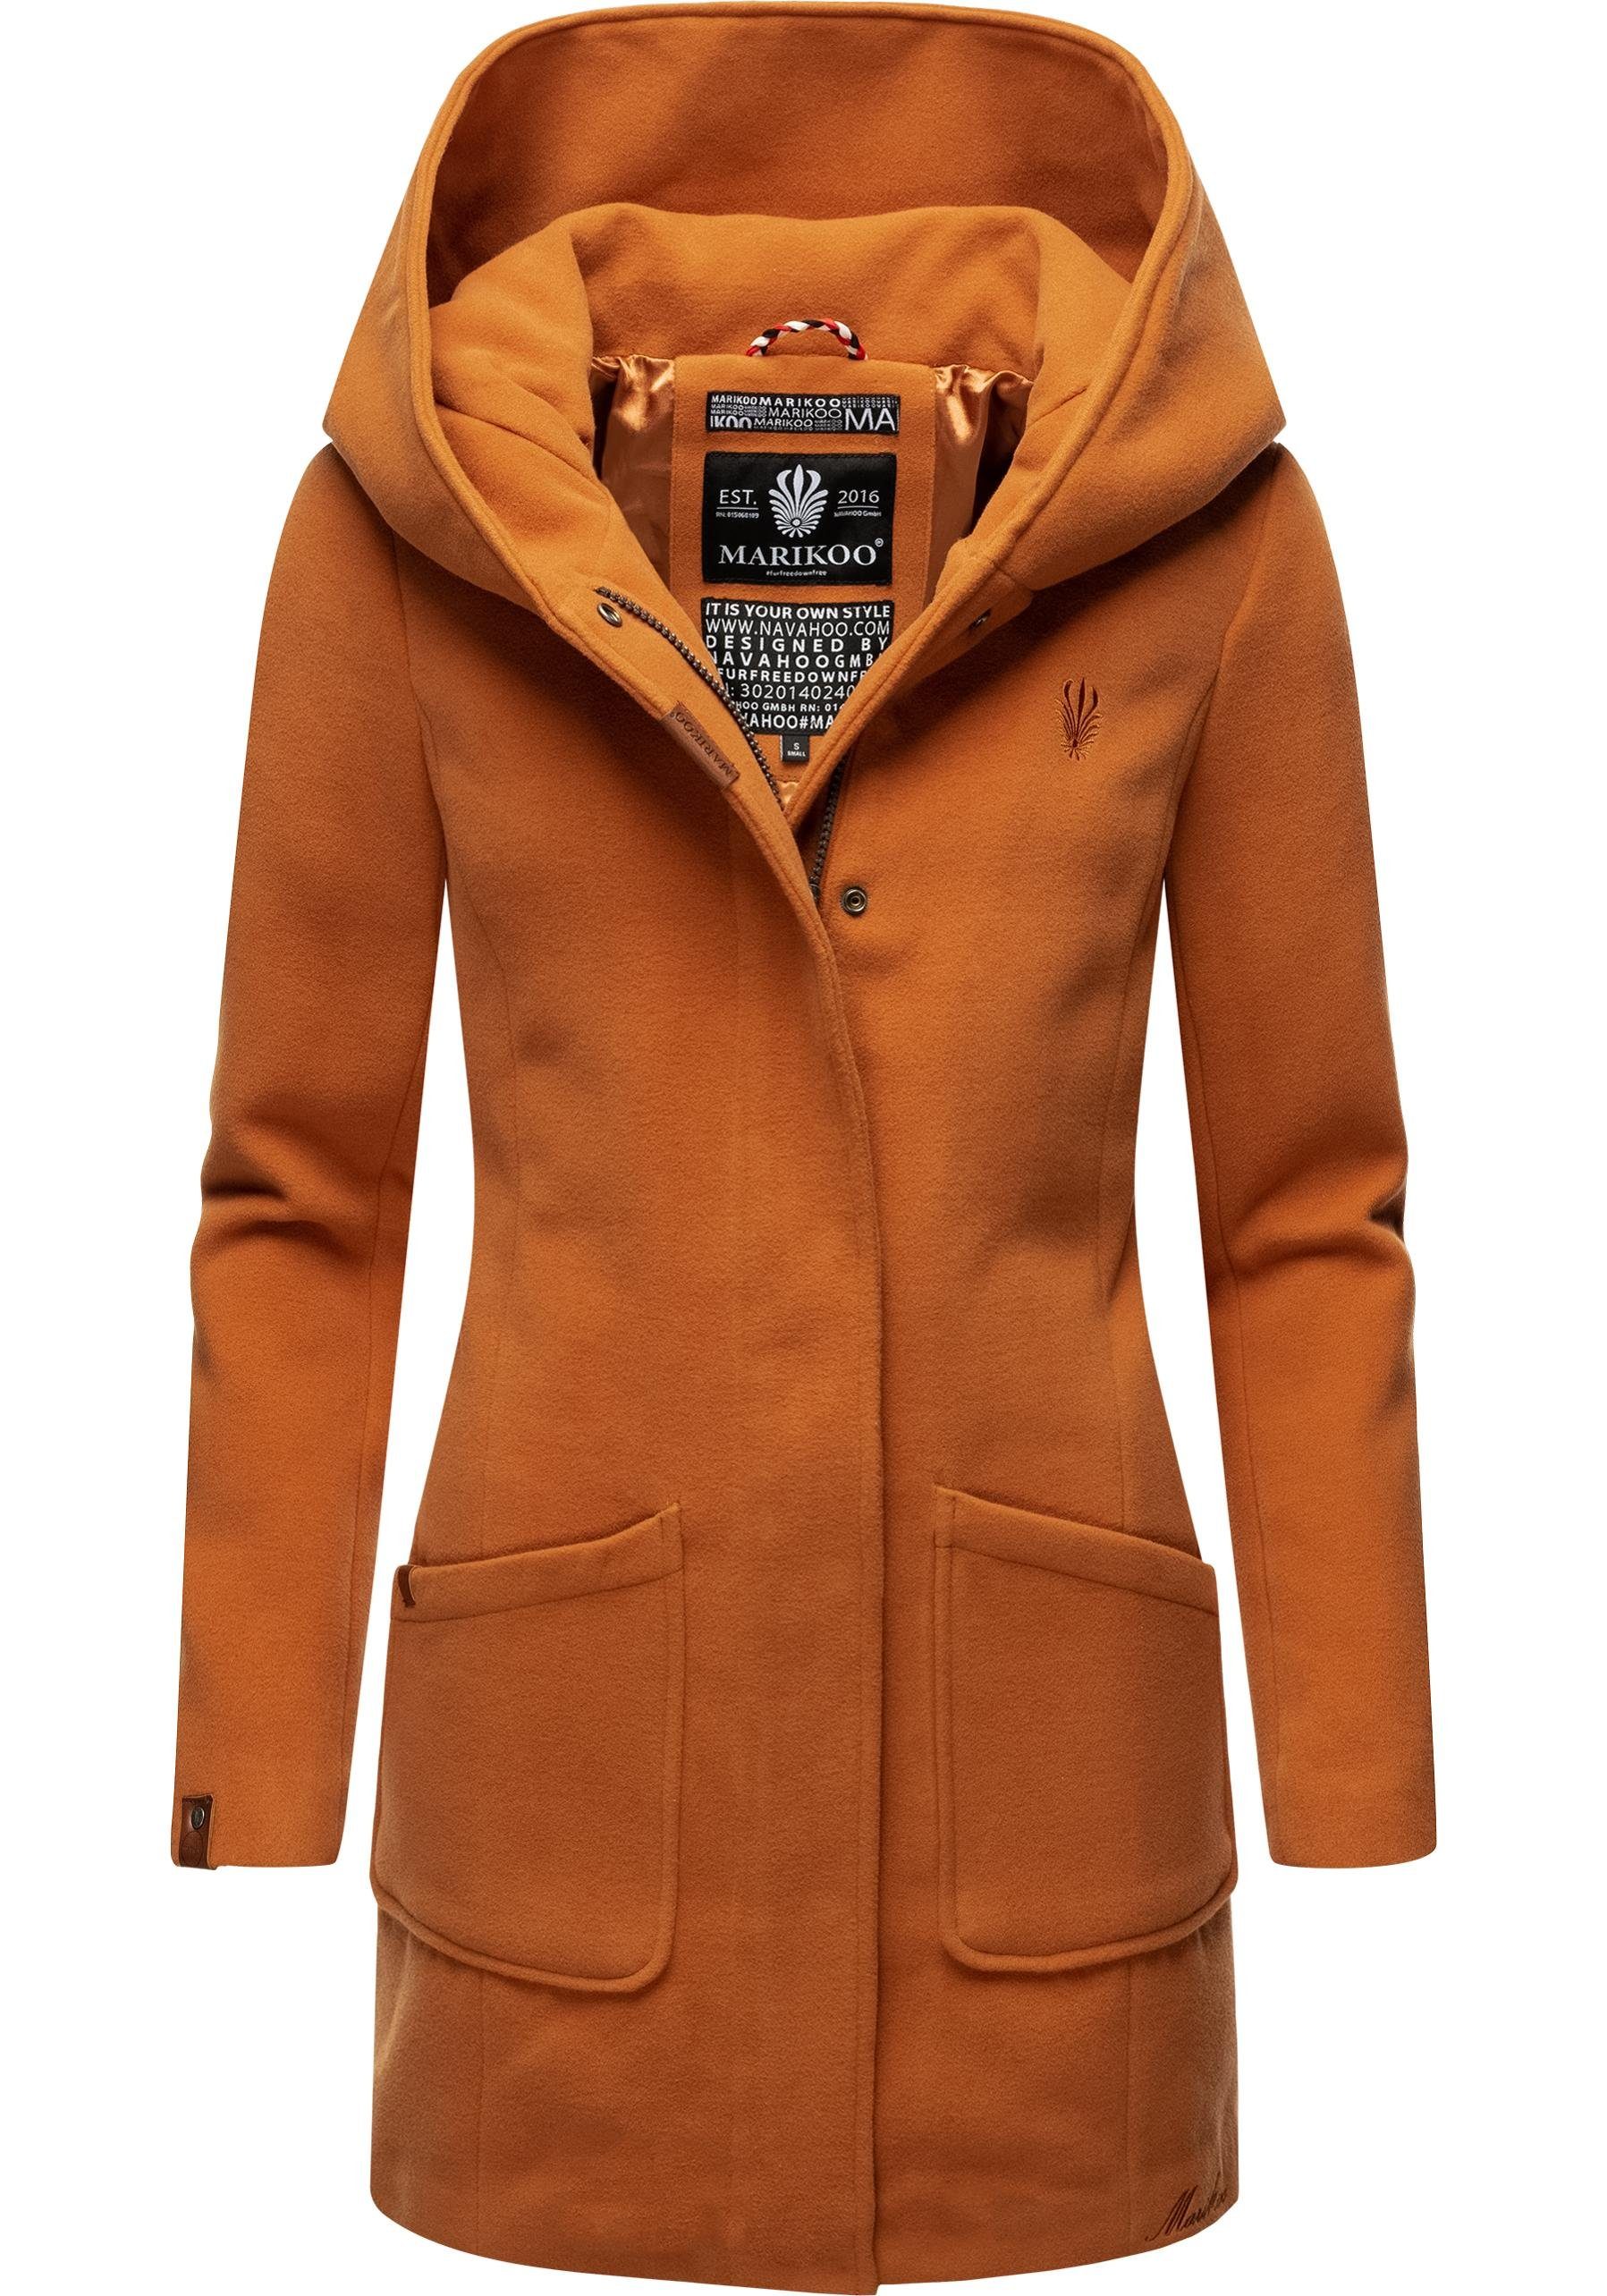 Marikoo Wintermantel »Maikoo« hochwertiger Mantel mit großer Kapuze online  kaufen | OTTO